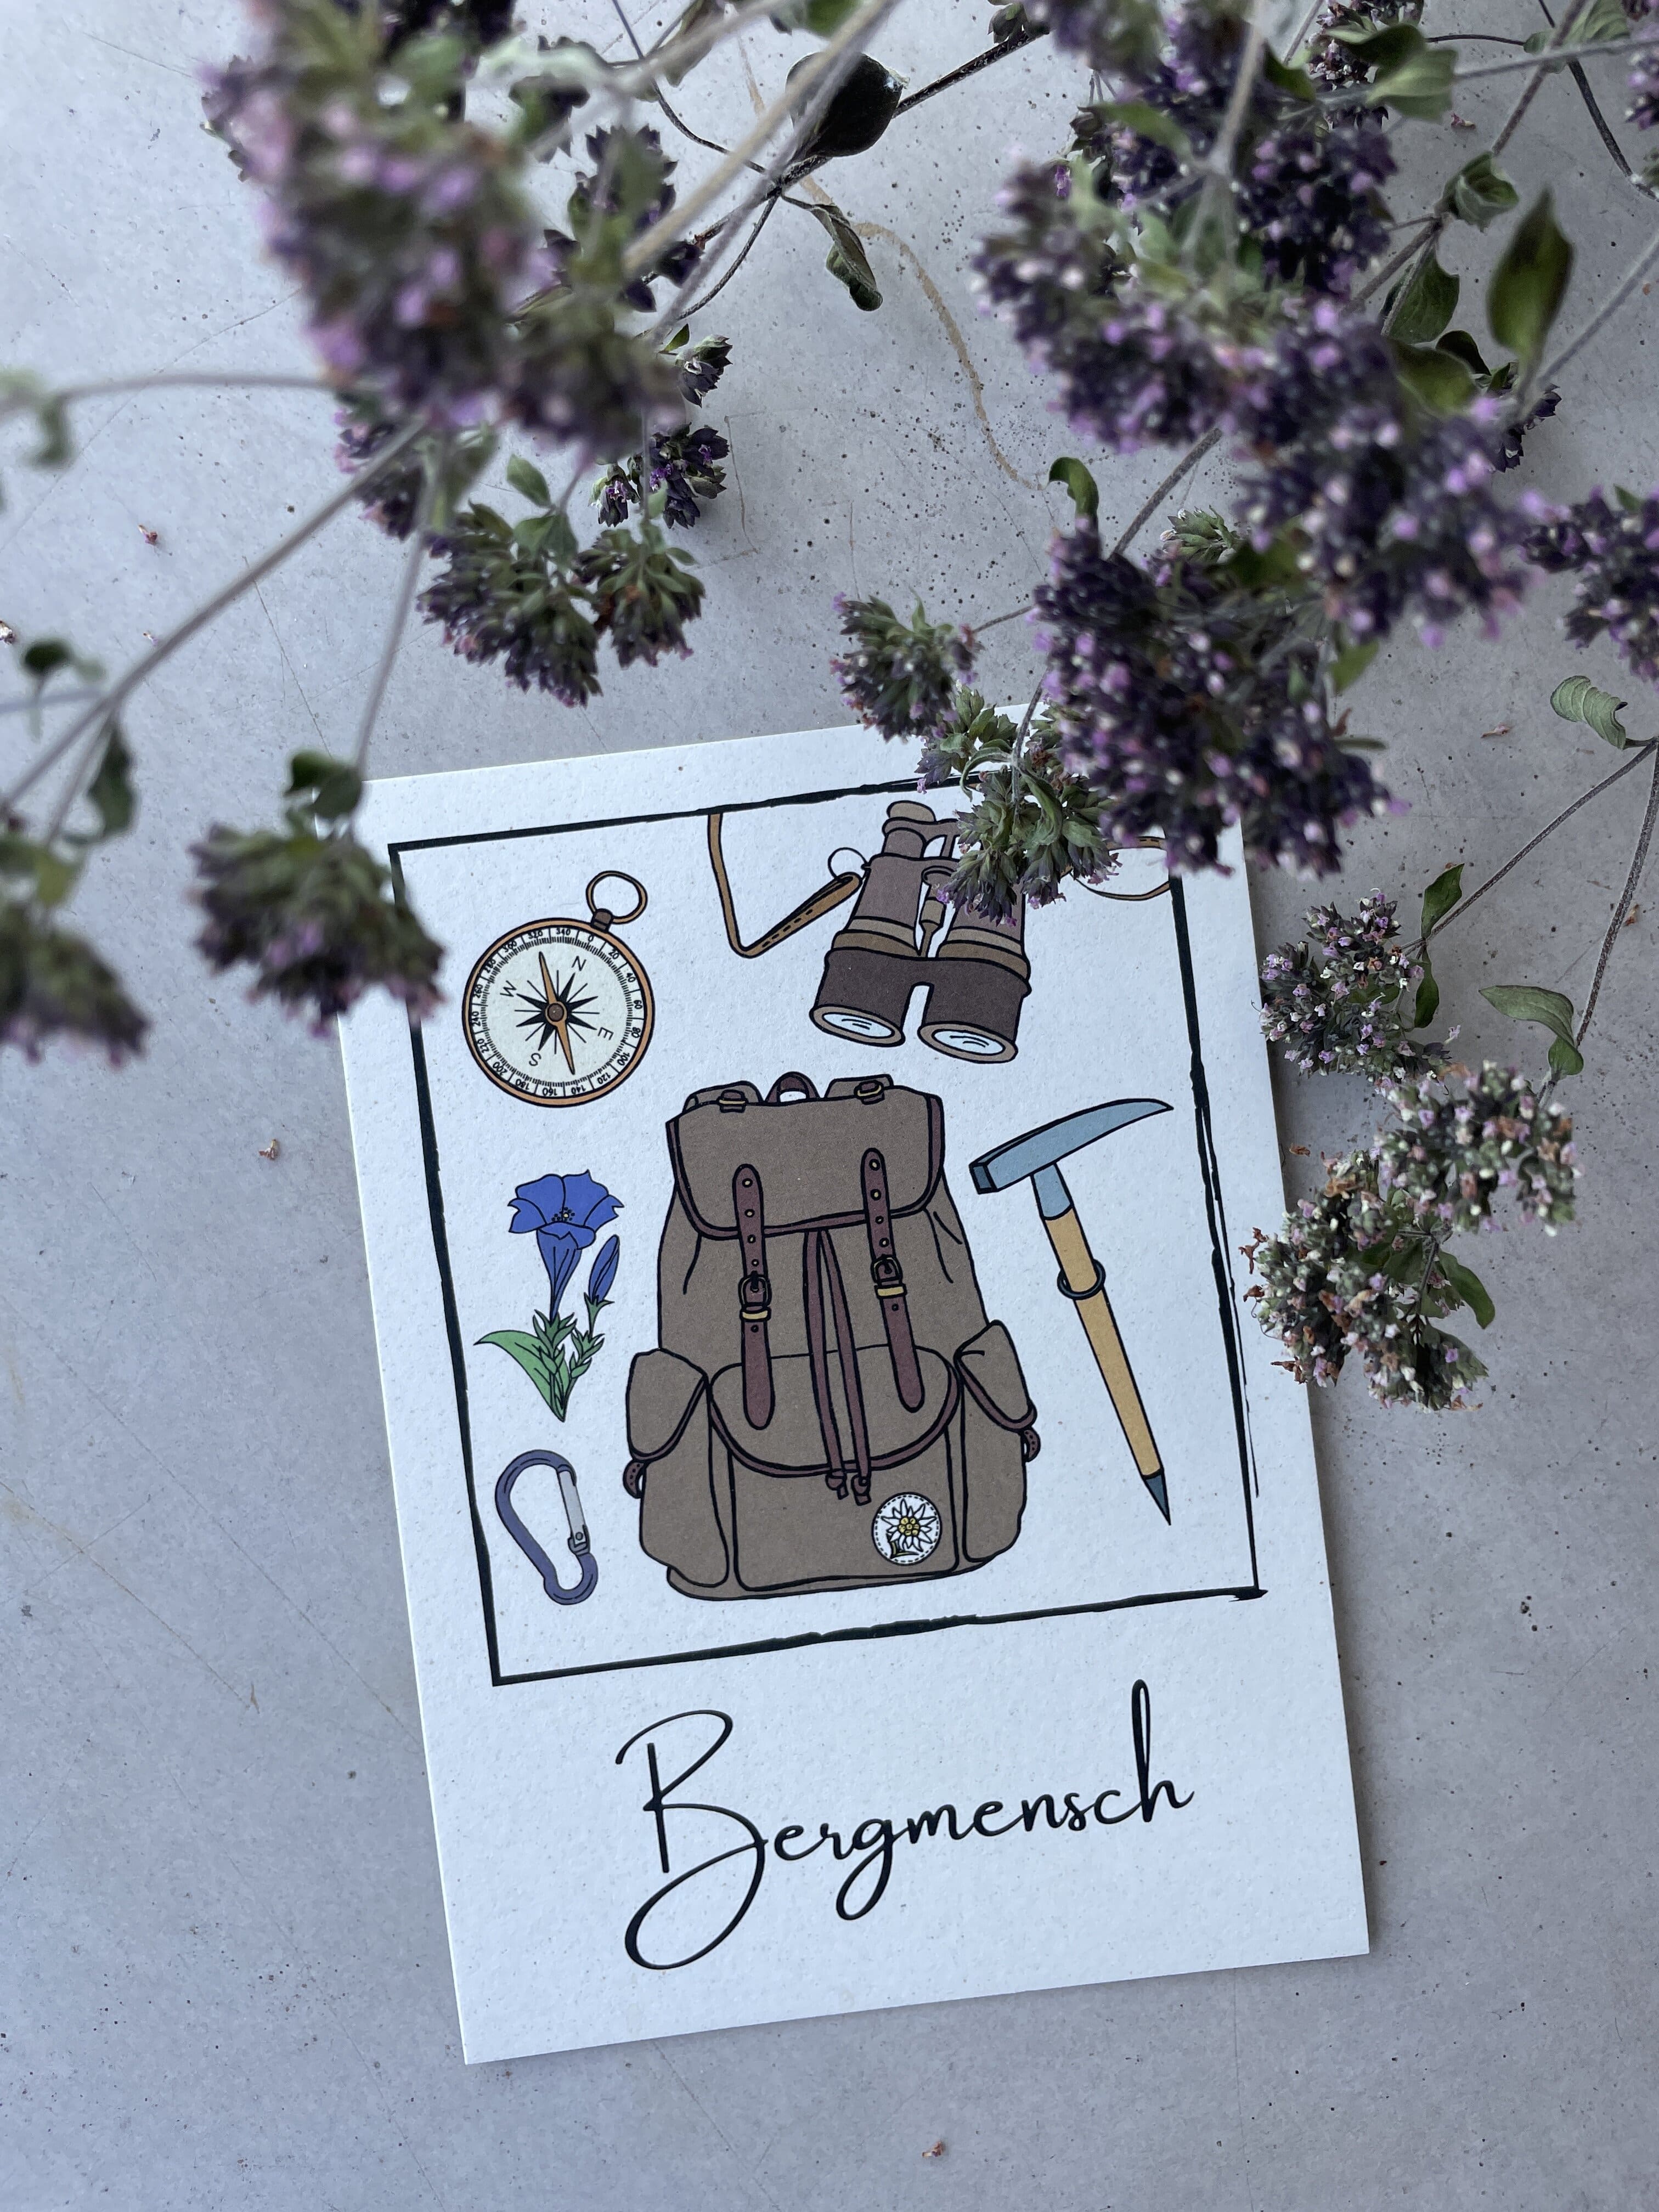 Cartolina di auguri con carta di mele: Bergmensch